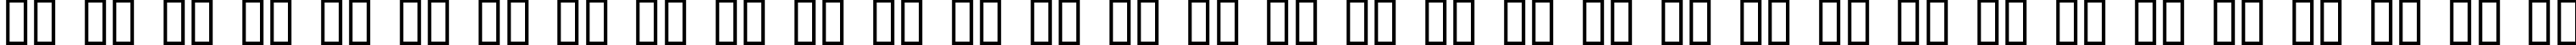 Пример написания русского алфавита шрифтом Aftershock Debris Solid